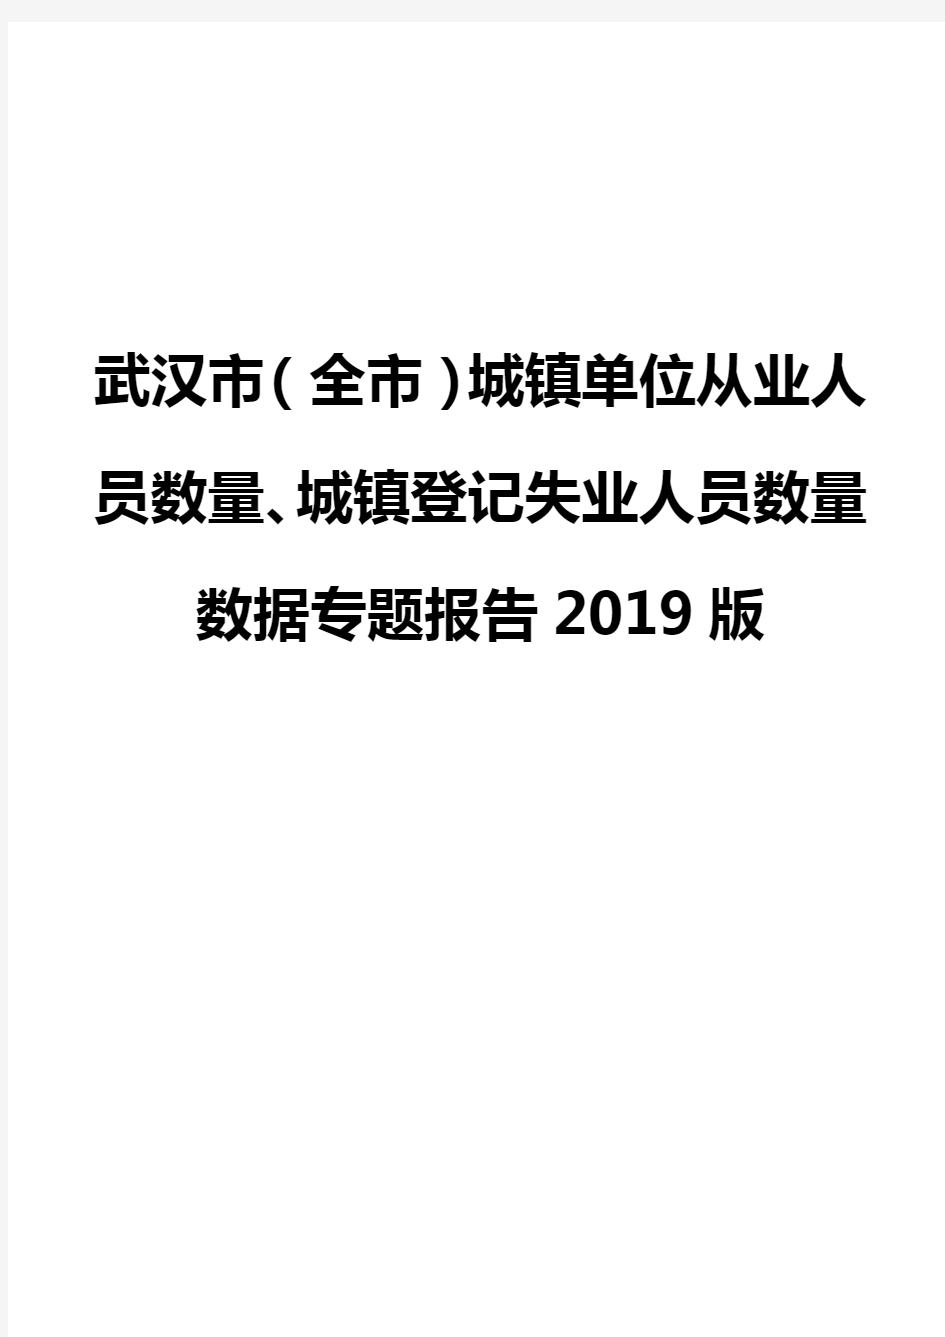 武汉市(全市)城镇单位从业人员数量、城镇登记失业人员数量数据专题报告2019版